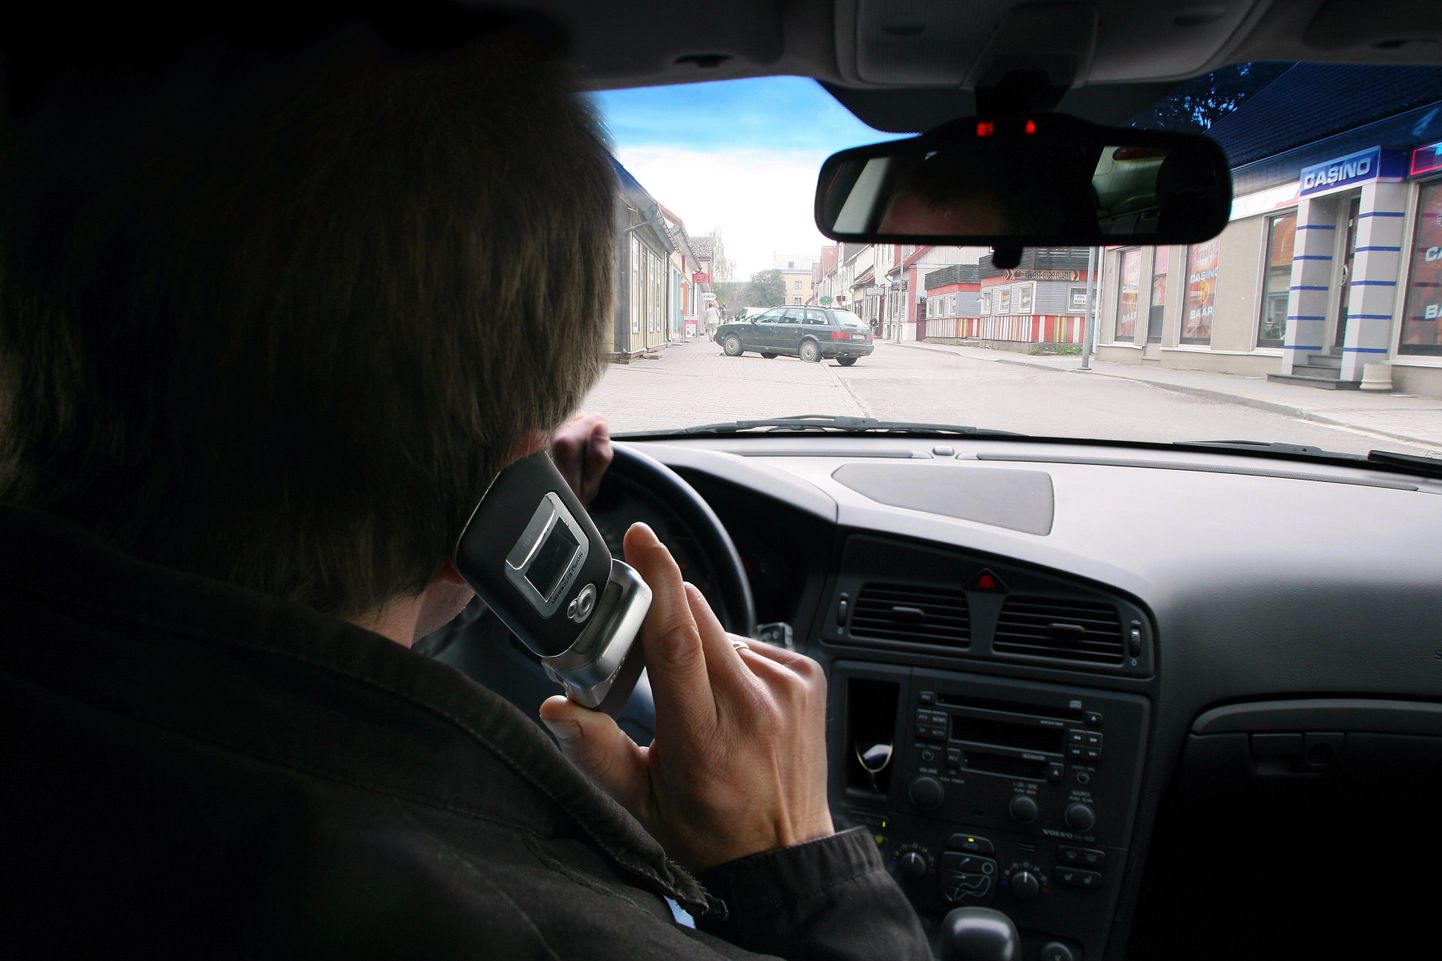 Liiklusseaduse järgi ei tohi autojuht kasutada telefoni ilma käsi käsi vabaks jätva vahendita.